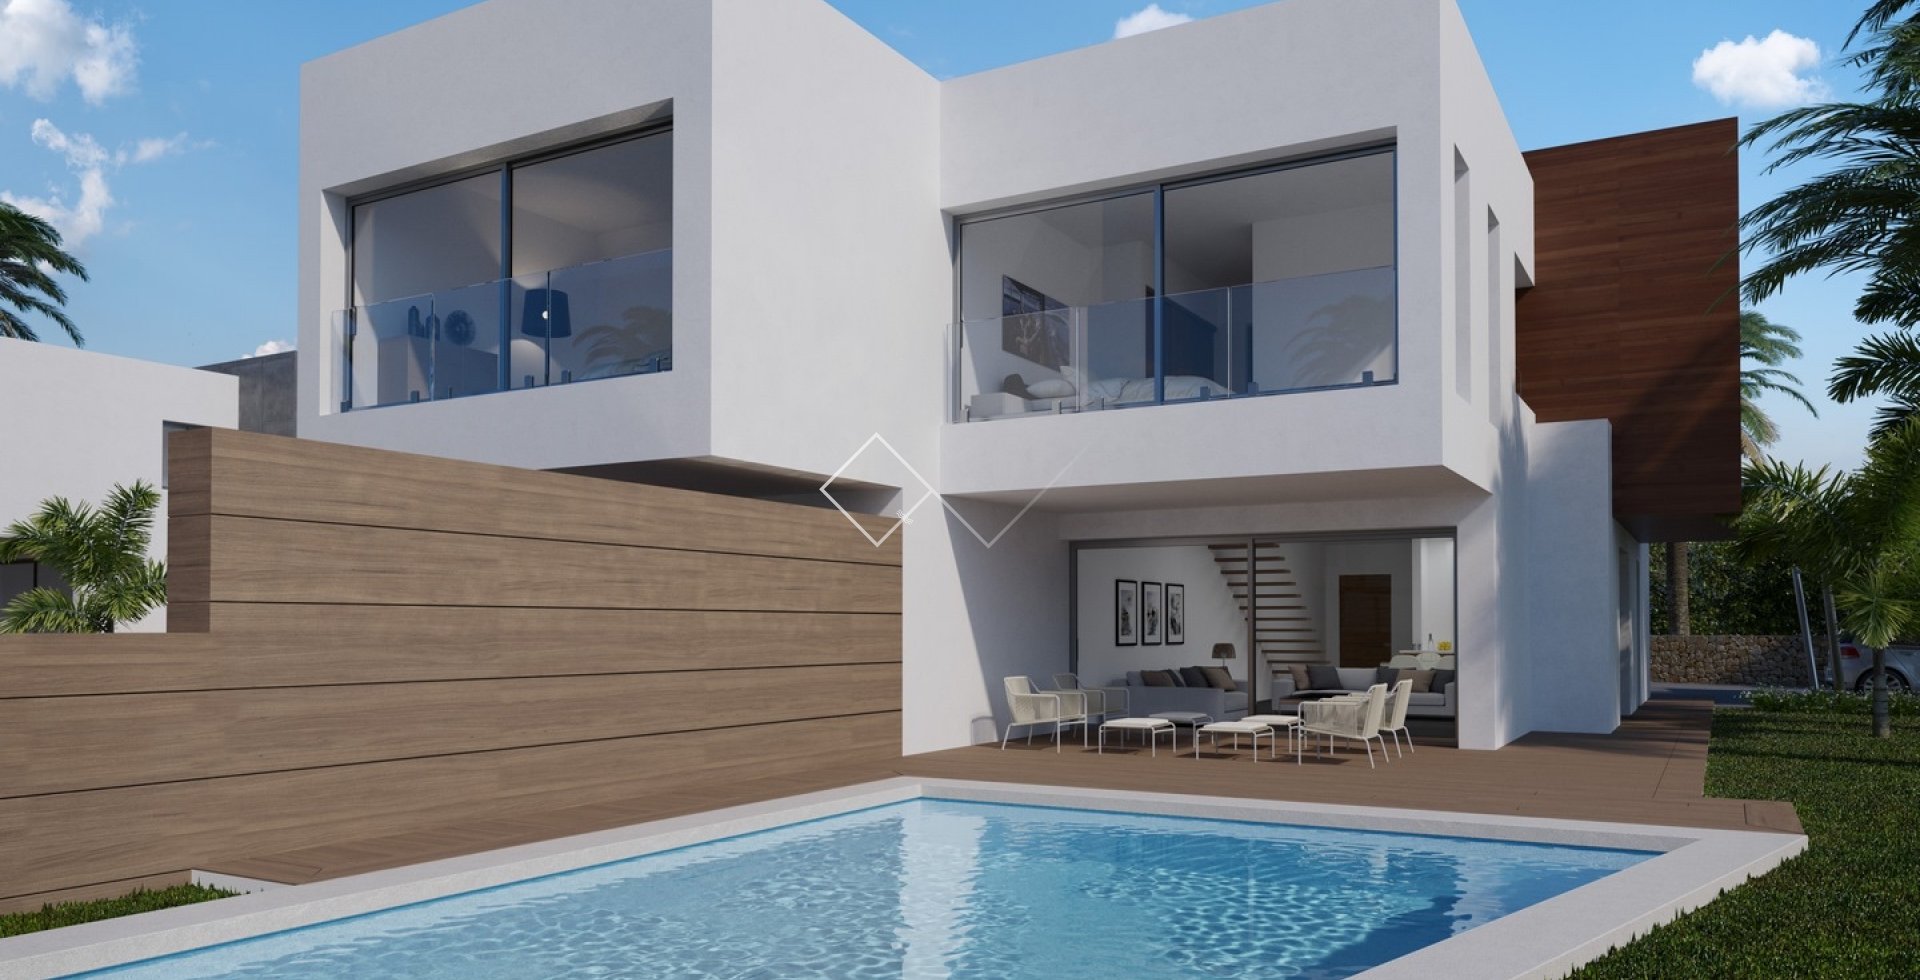 Villa adosado nuevo en venta en Moraira, a 600m del mar